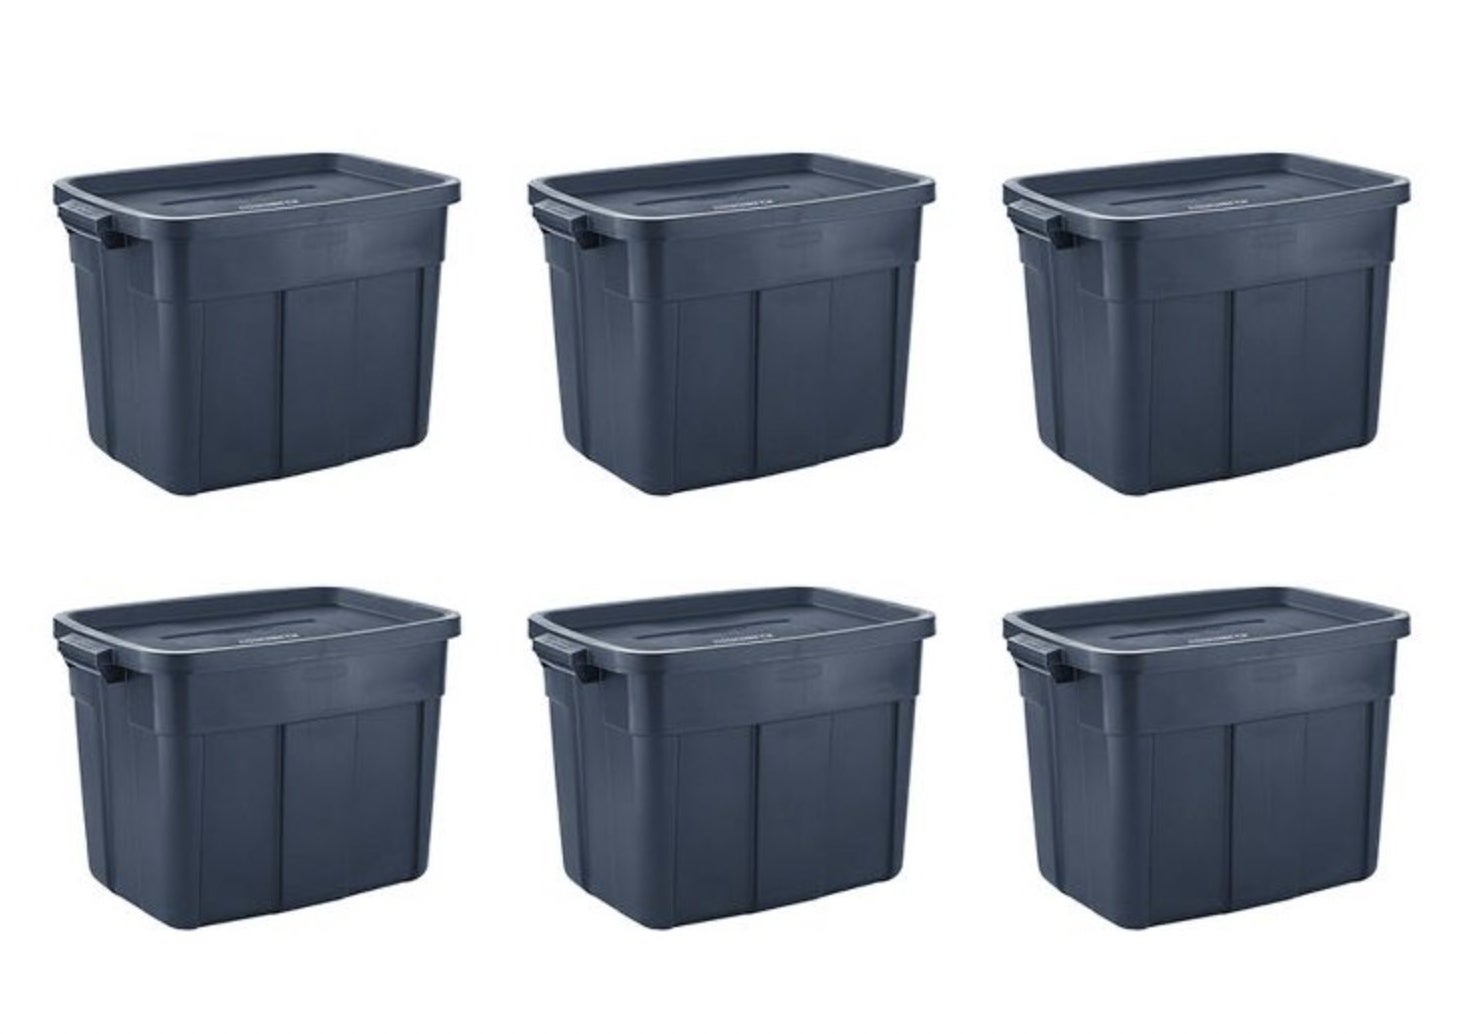 The six storage bins